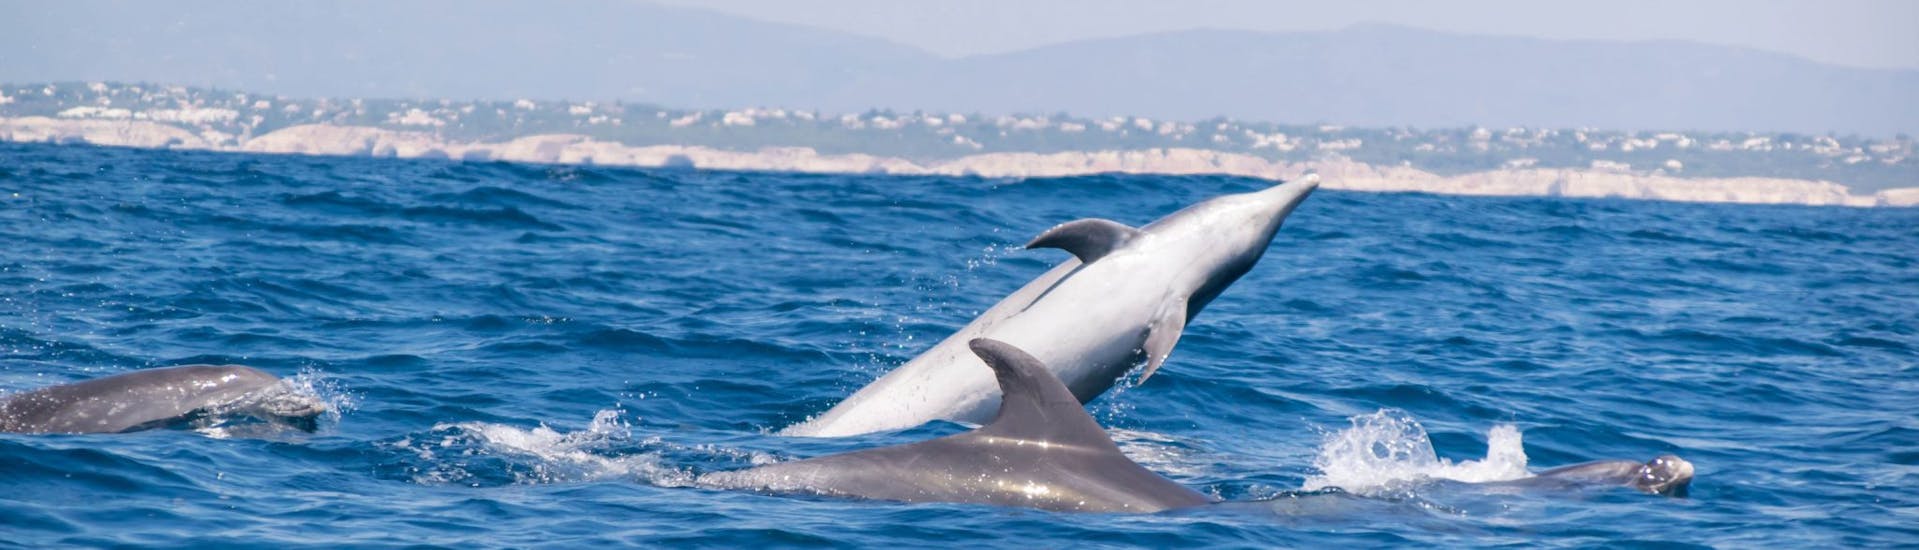 Delfines que se pueden ver durante el Paseo en Barco desde Portimão con Dolphin Watching con 5emotions Portimão.